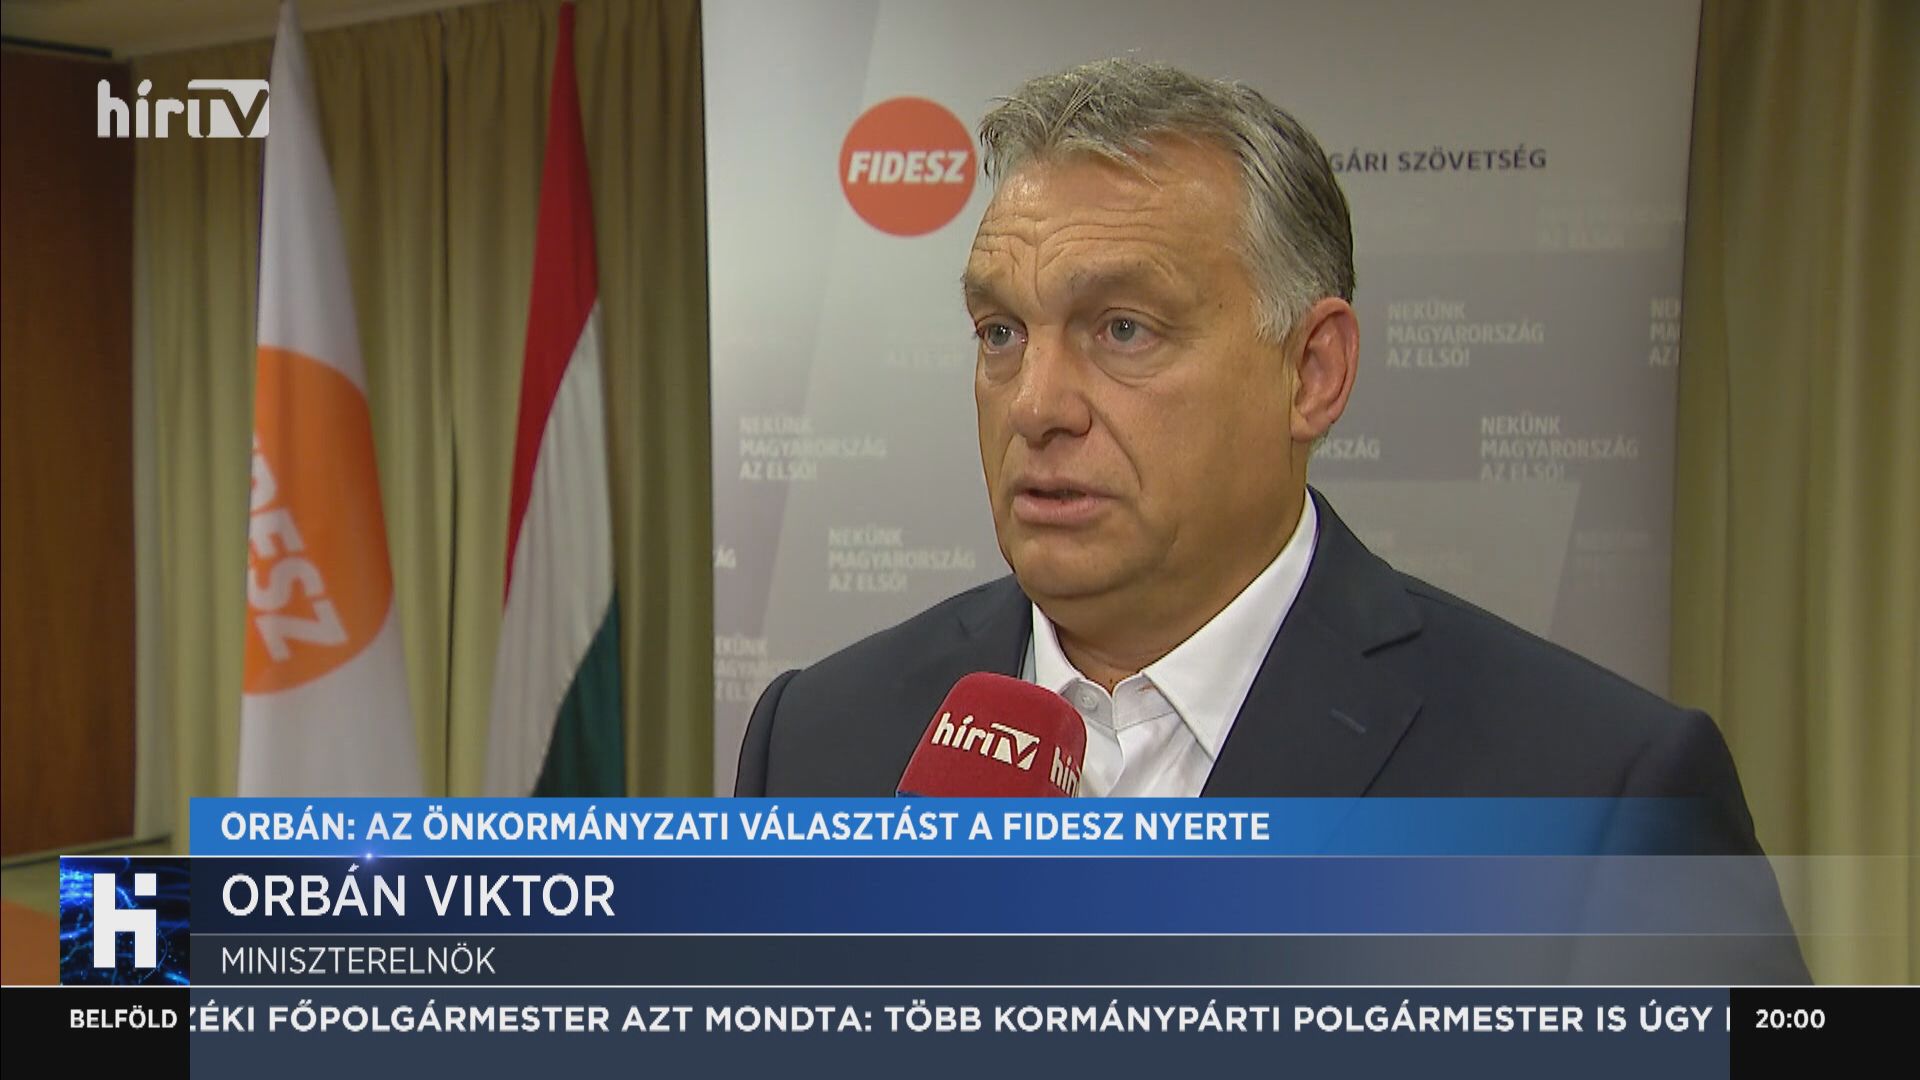 Orbán Viktor: Az önkormányzati választást a Fidesz nyerte